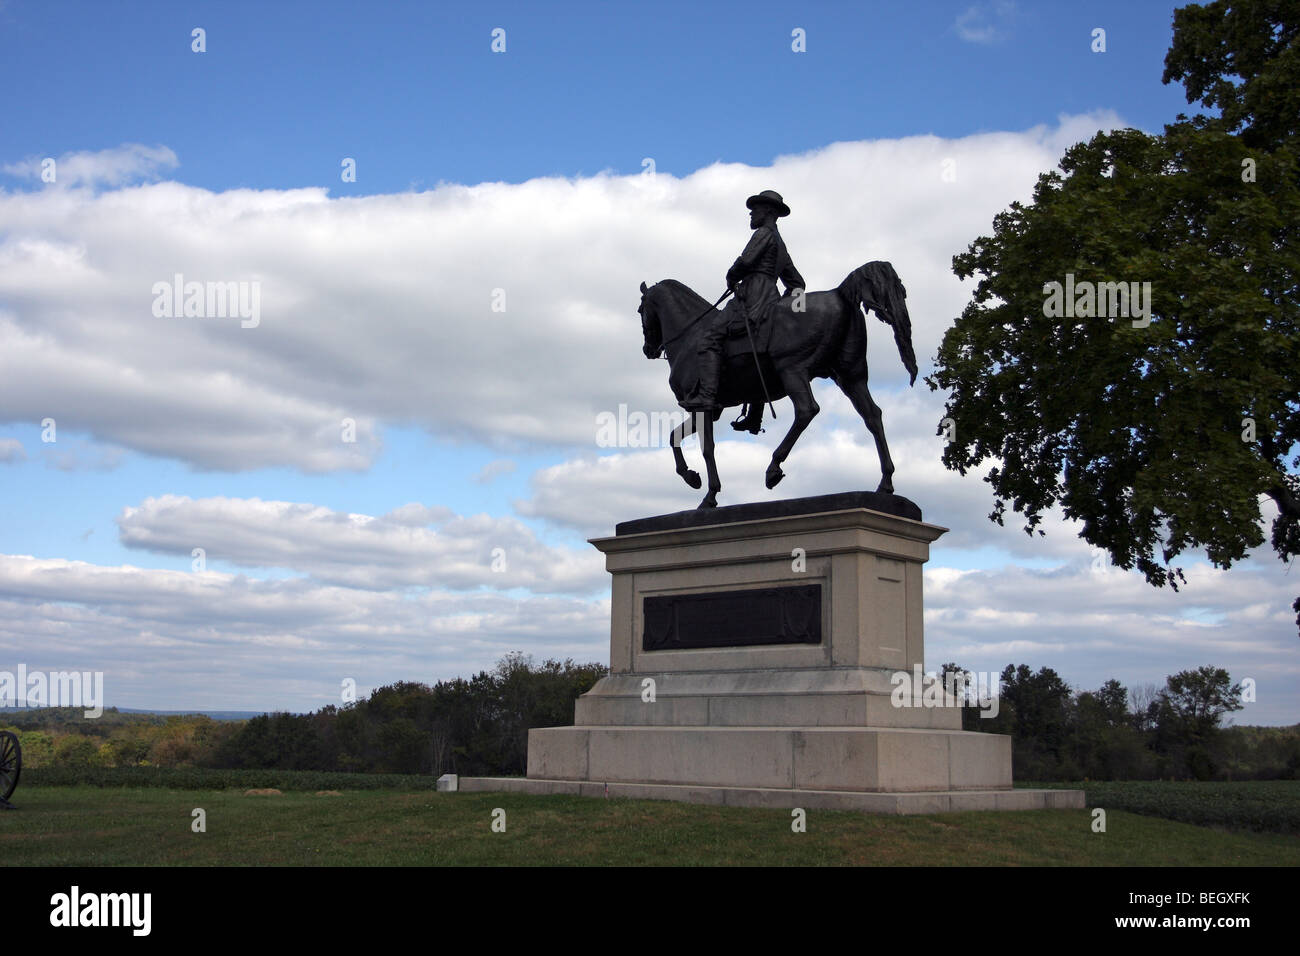 Monumento al Mayor General John Reynolds, comandante del ejército de la Unión el 1er Corp. muertos el primer día de la batalla. Gettysburg Foto de stock